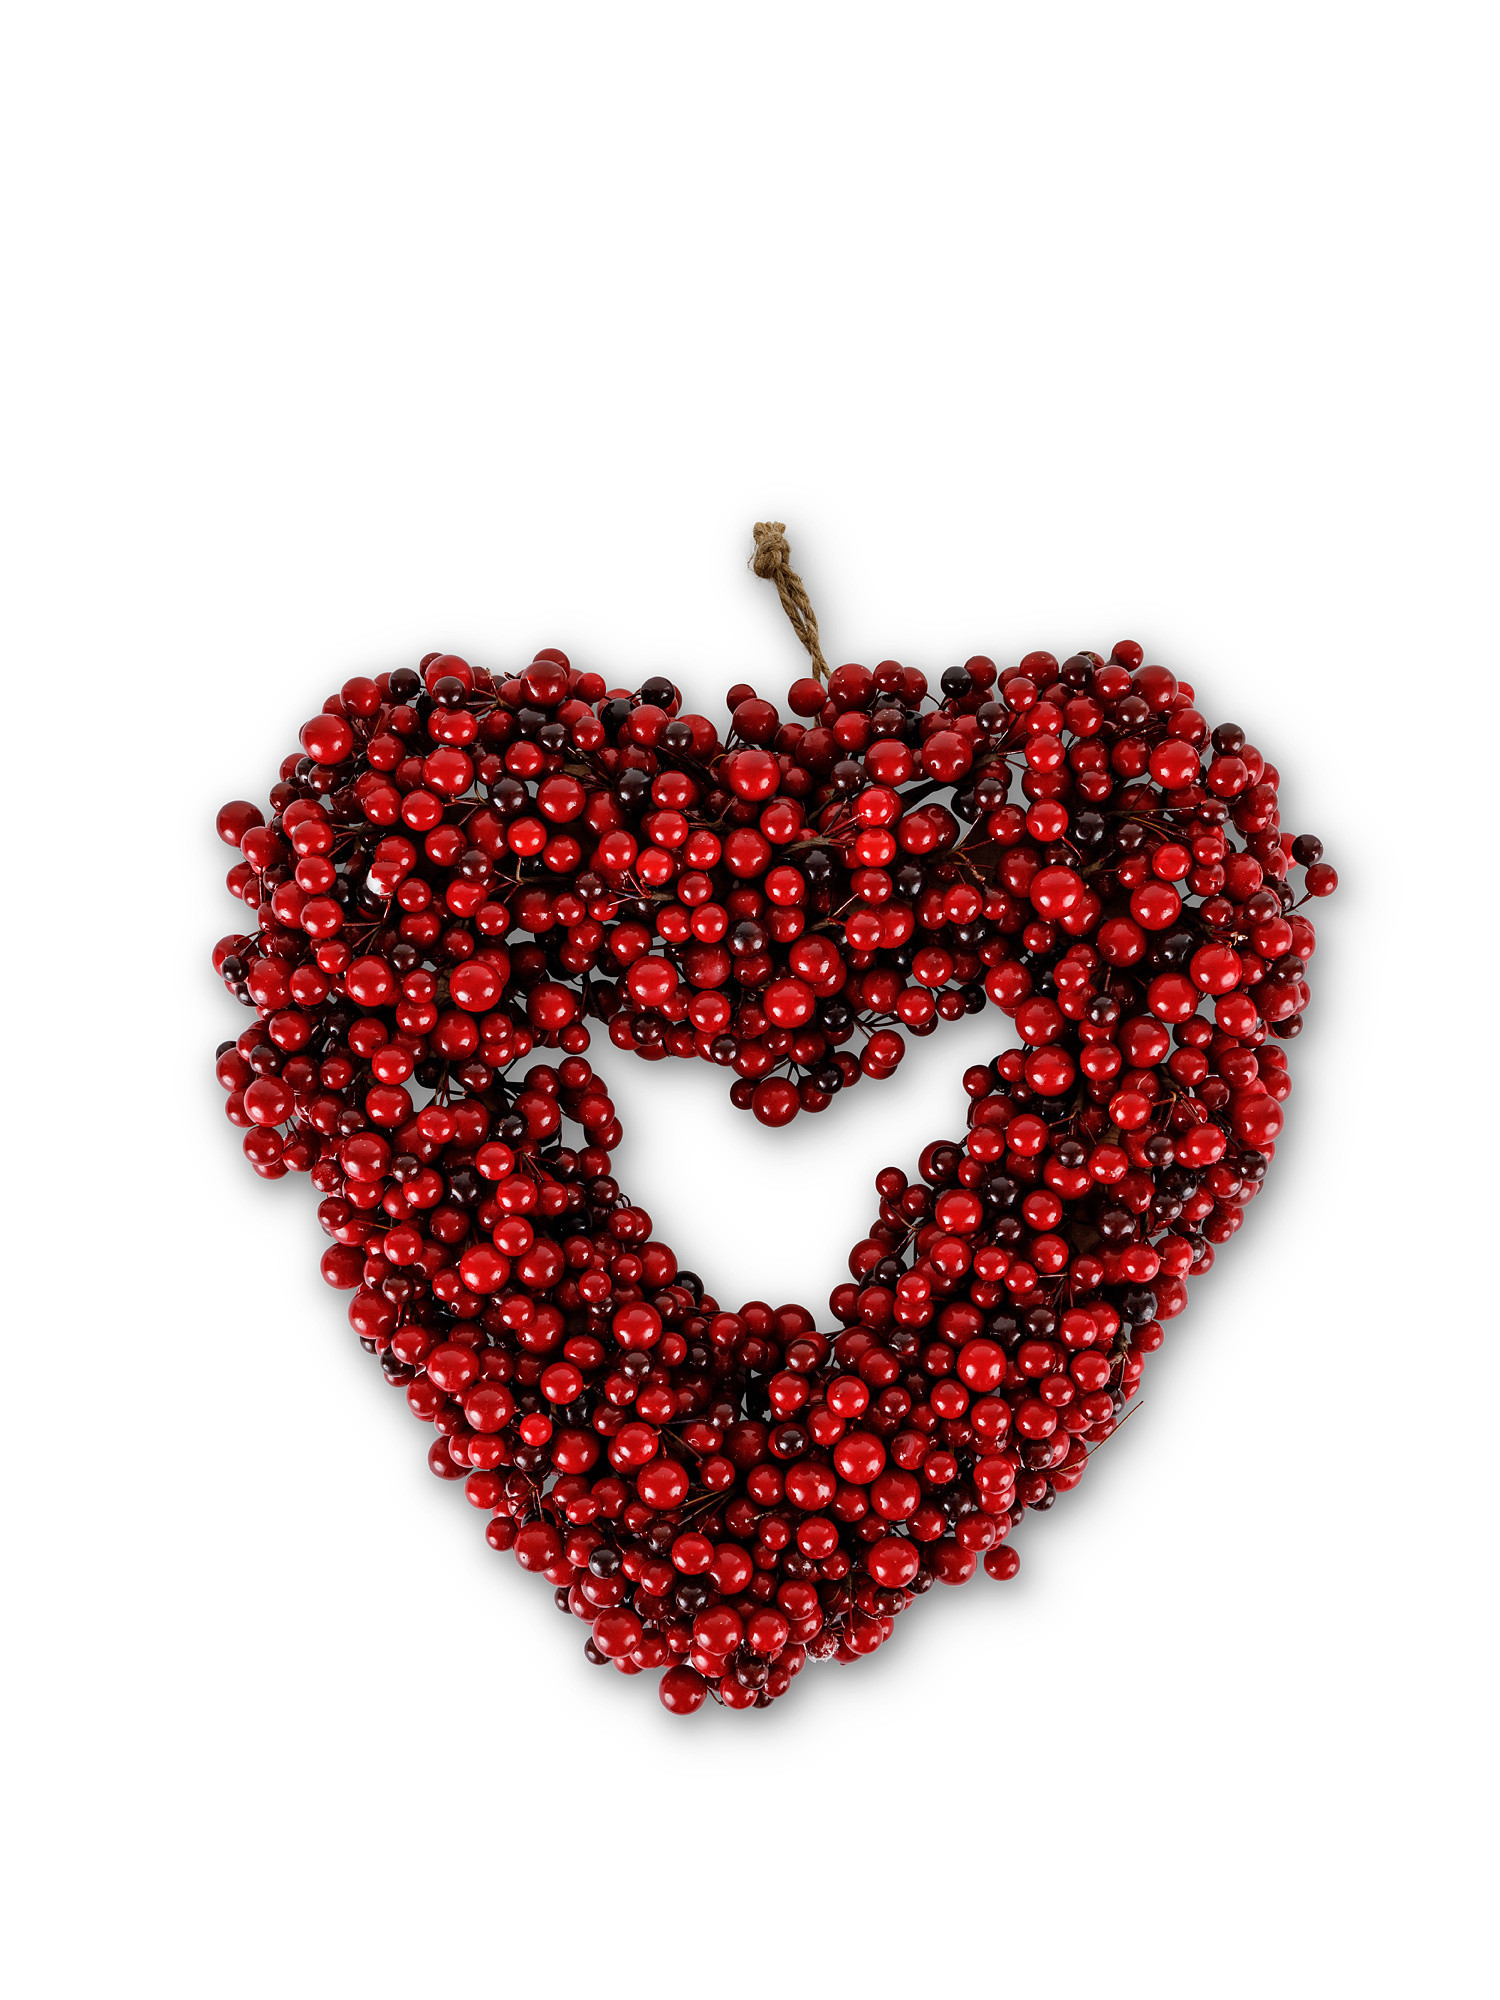 Corona decorativa a cuore con bacche, Rosso, large image number 0